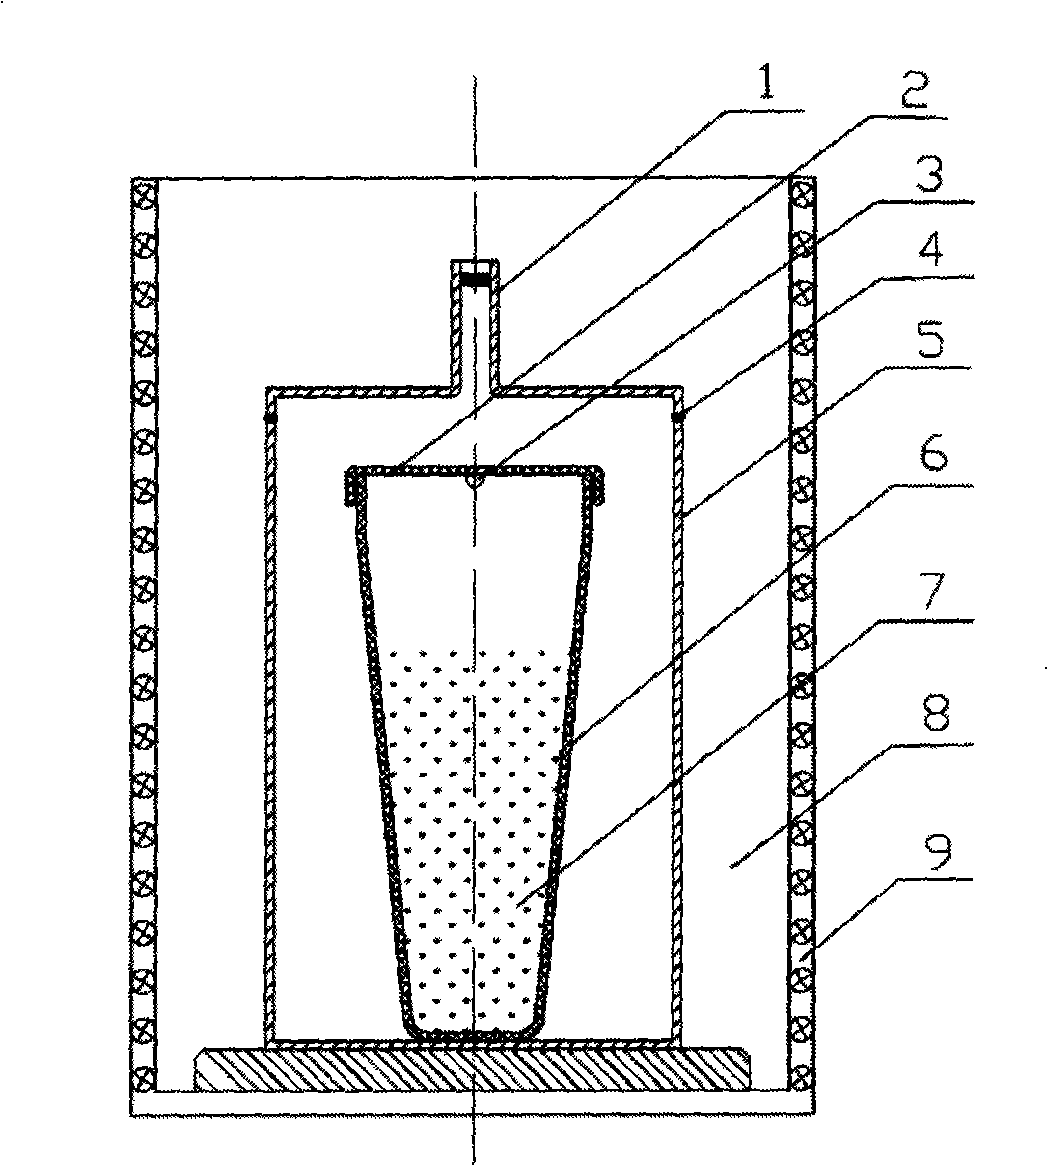 Vacuum smelting method and apparatus for copper-indium-gallium-selenium photovoltaic material